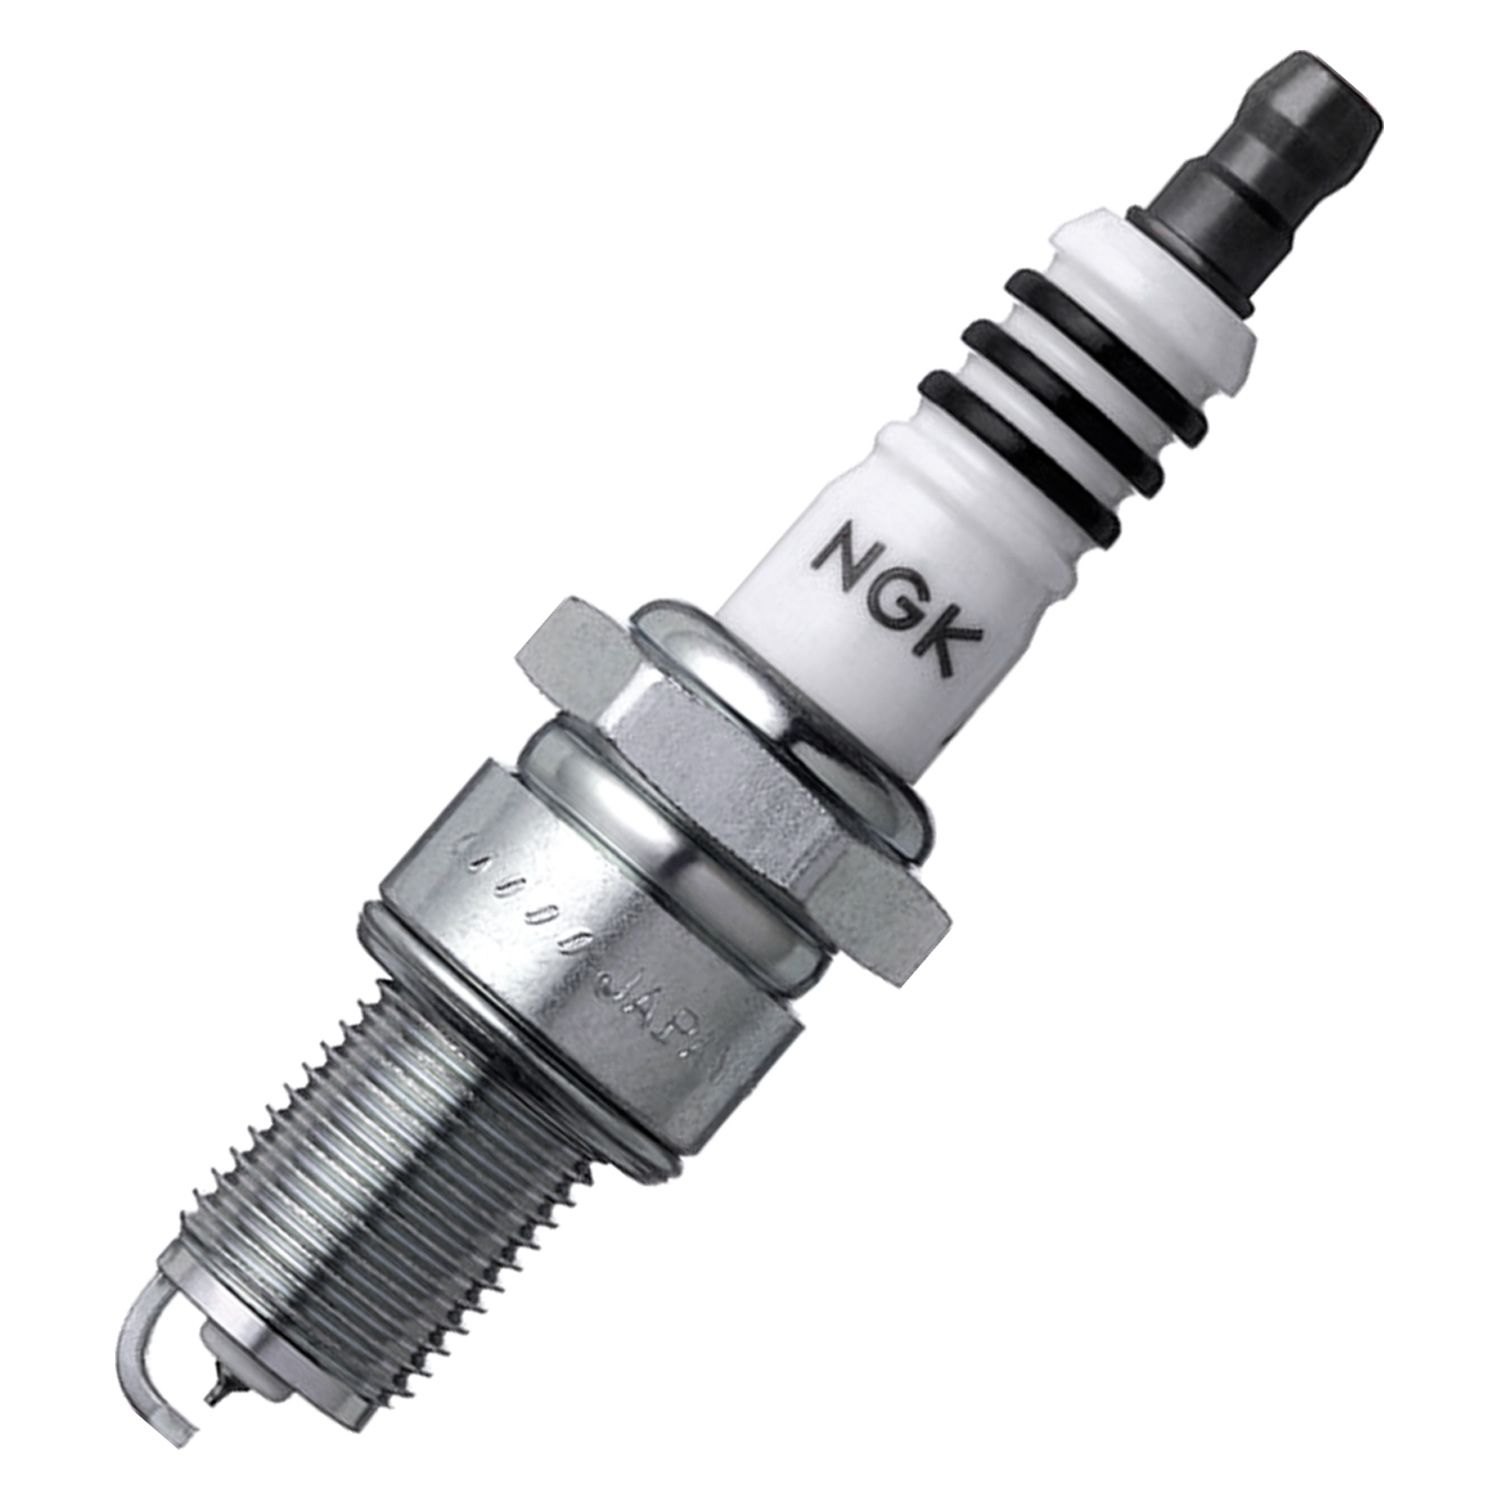 ngk-3903-iridium-ix-spark-plug